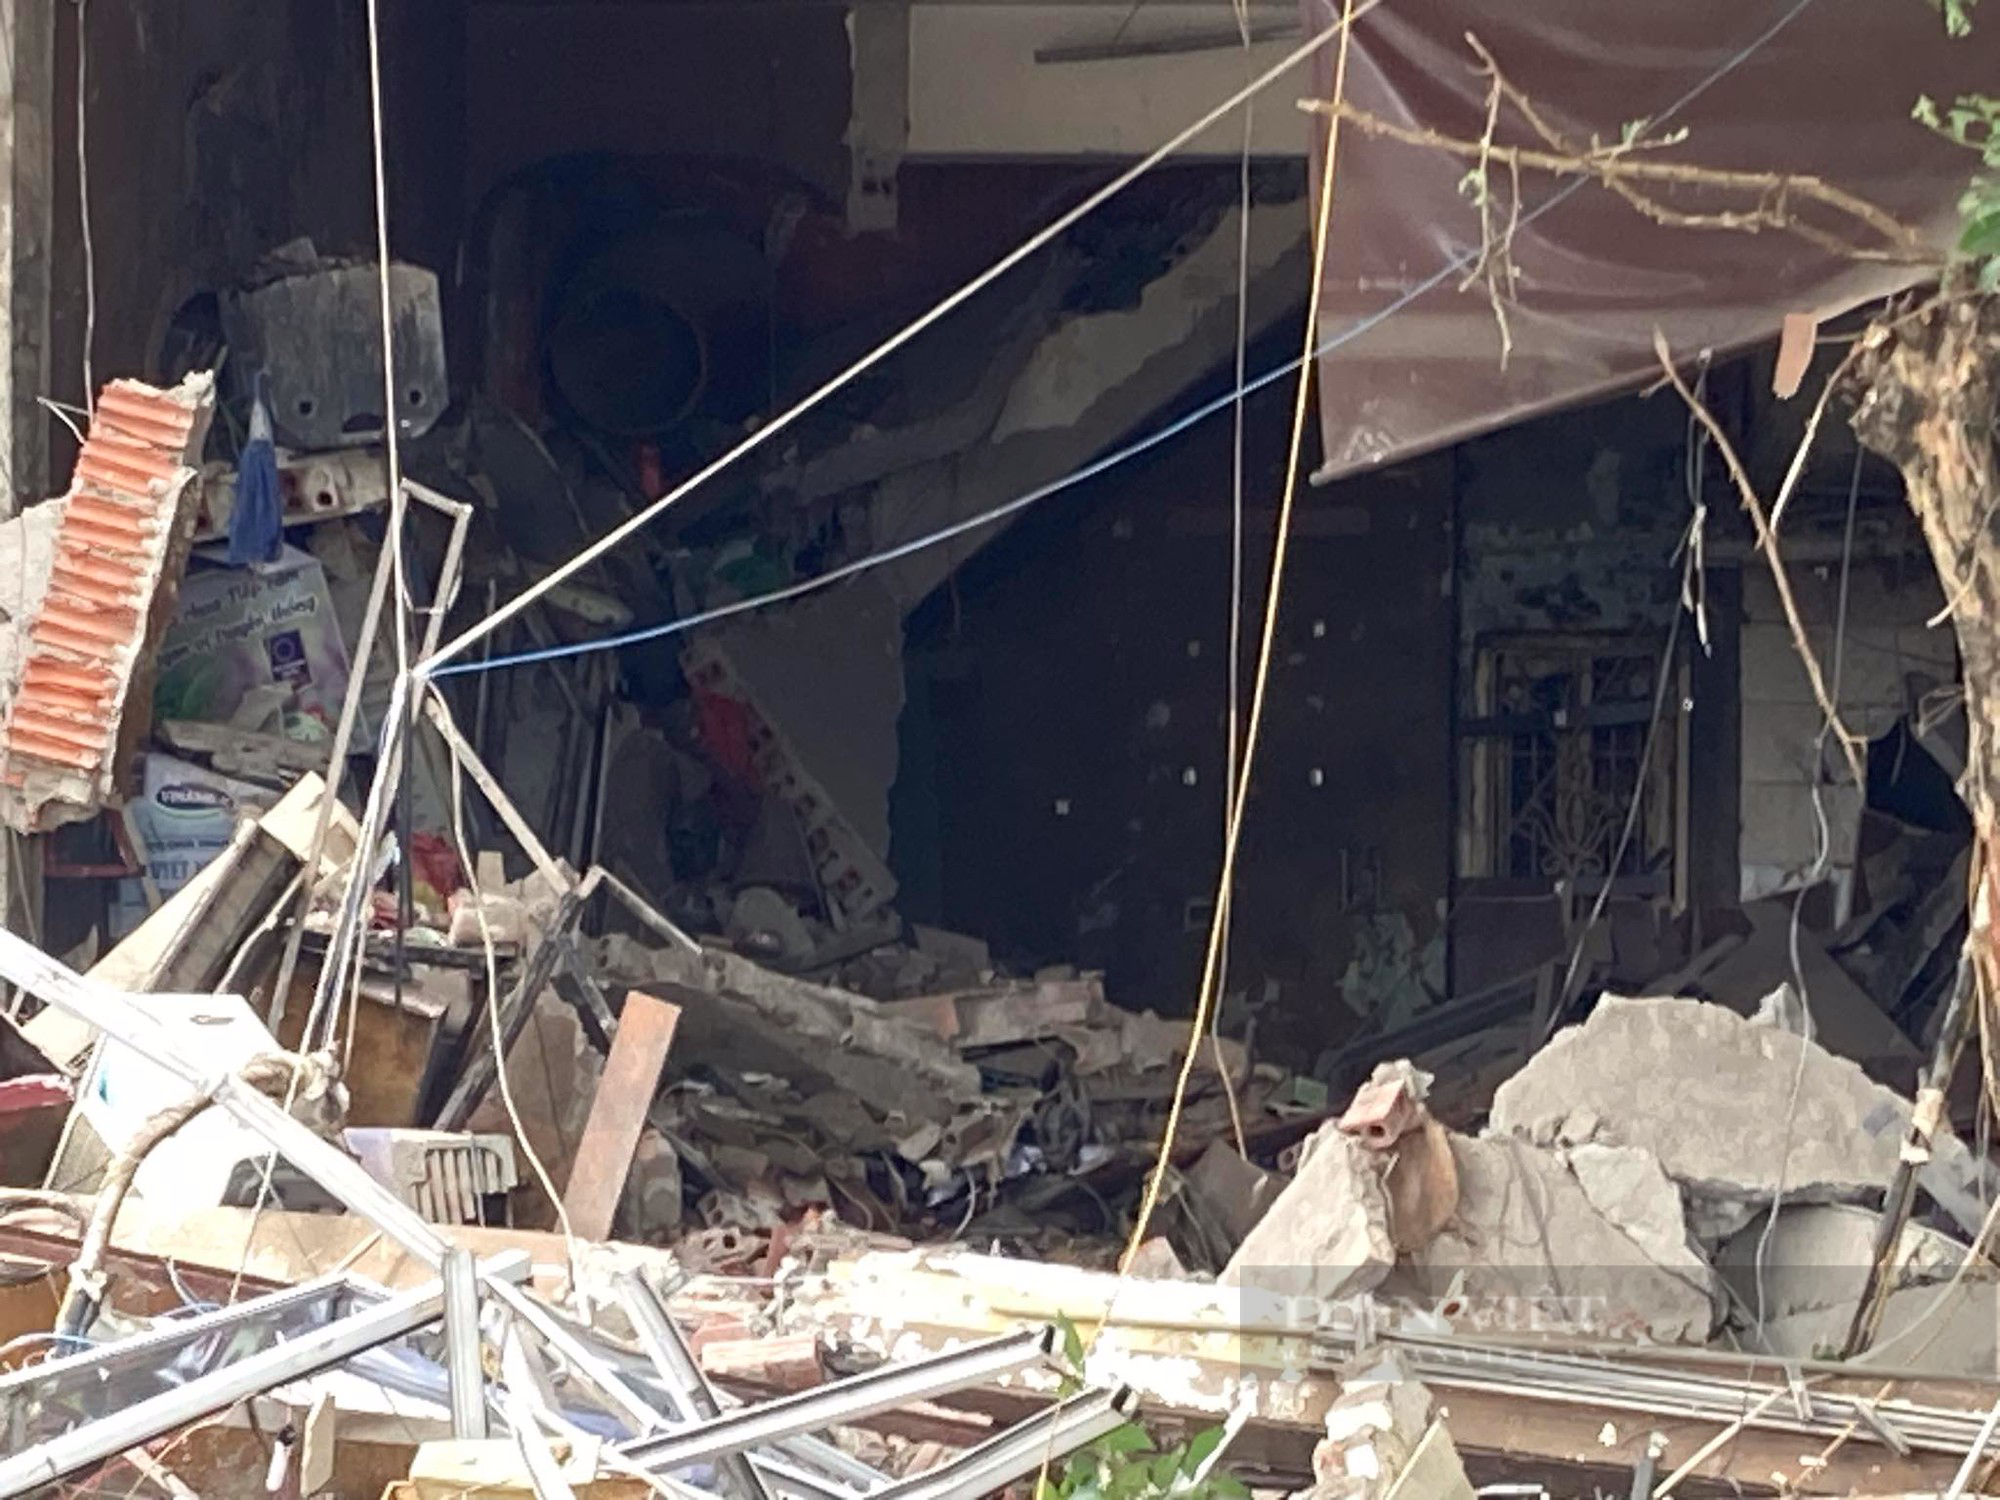 Hiện trường tan hoang sau nổ lớn cực lớn quán lẩu ở phố Yên Phụ, nhiều người bị thương nặng - Ảnh 6.